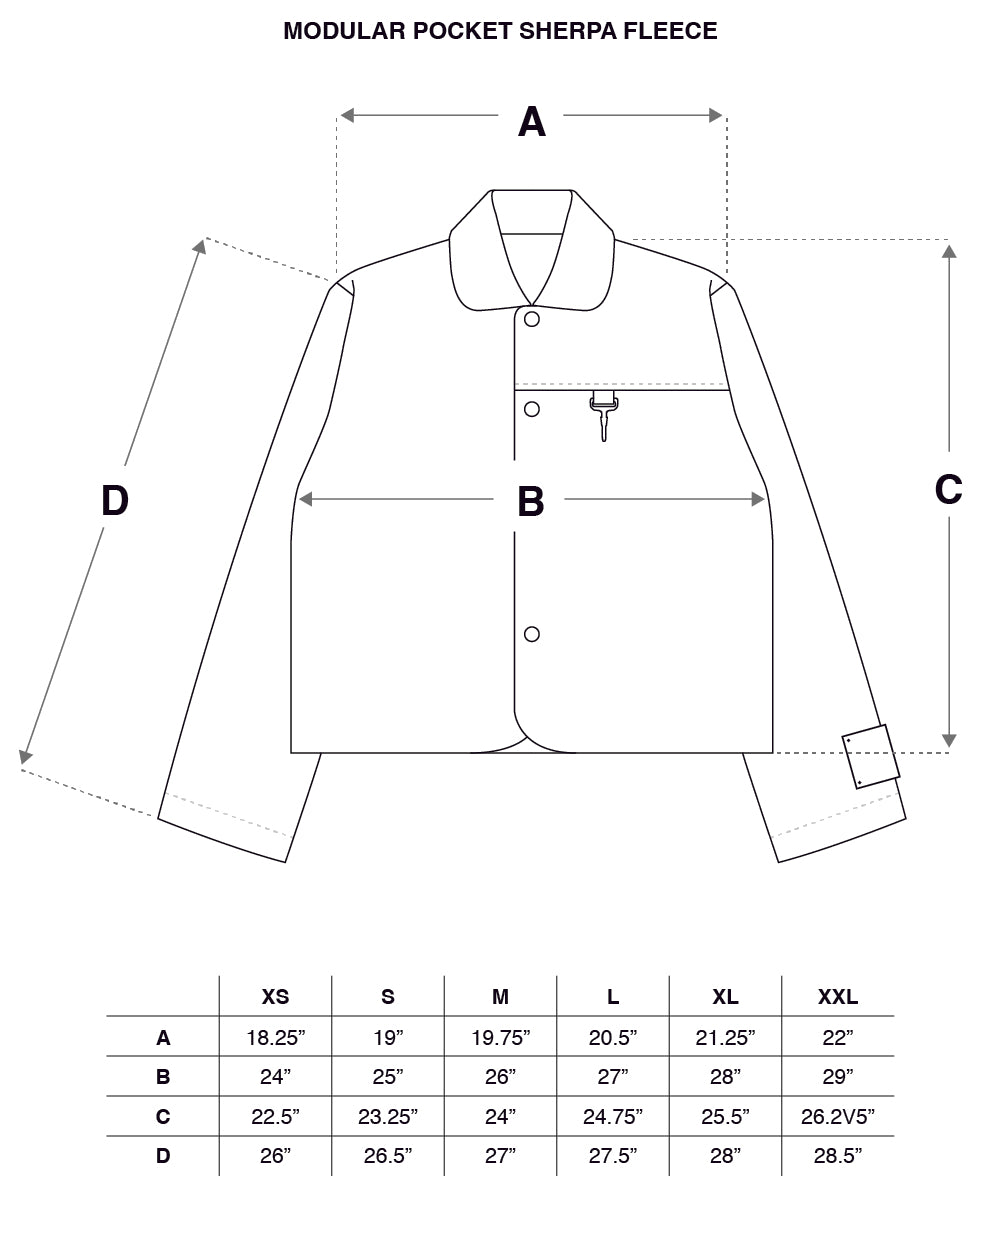 Modular Pocket Sherpa Fleece in Black Size Guide